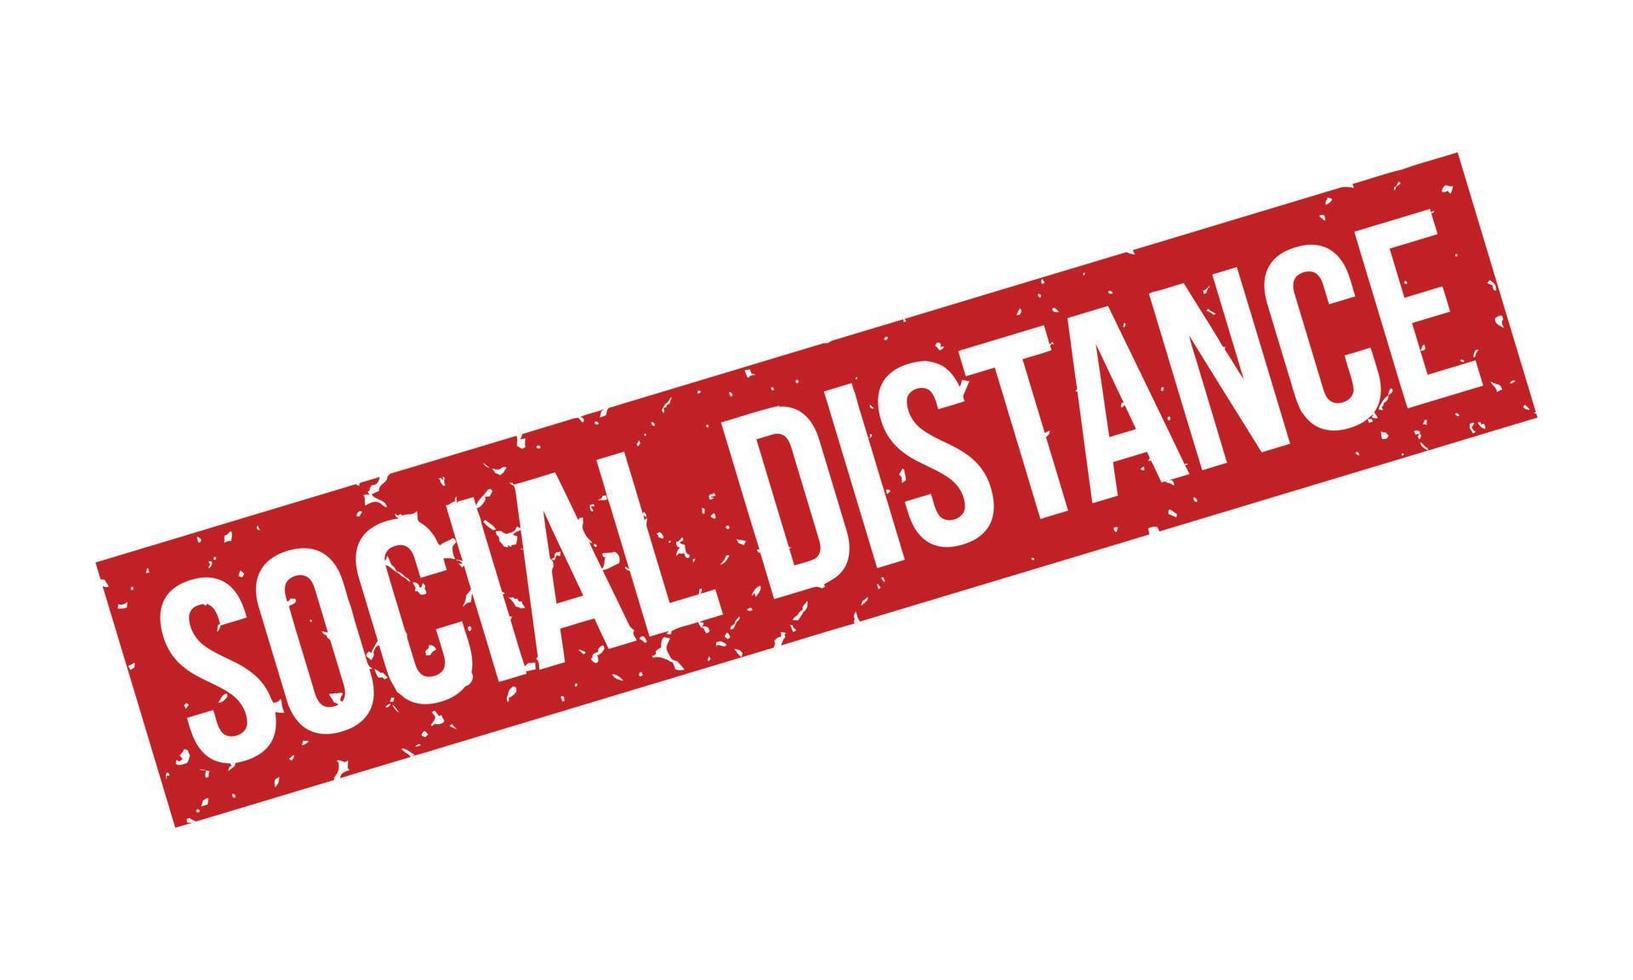 sociaal afstand rubber stempel. rood sociaal afstand rubber grunge postzegel zegel vector illustratie